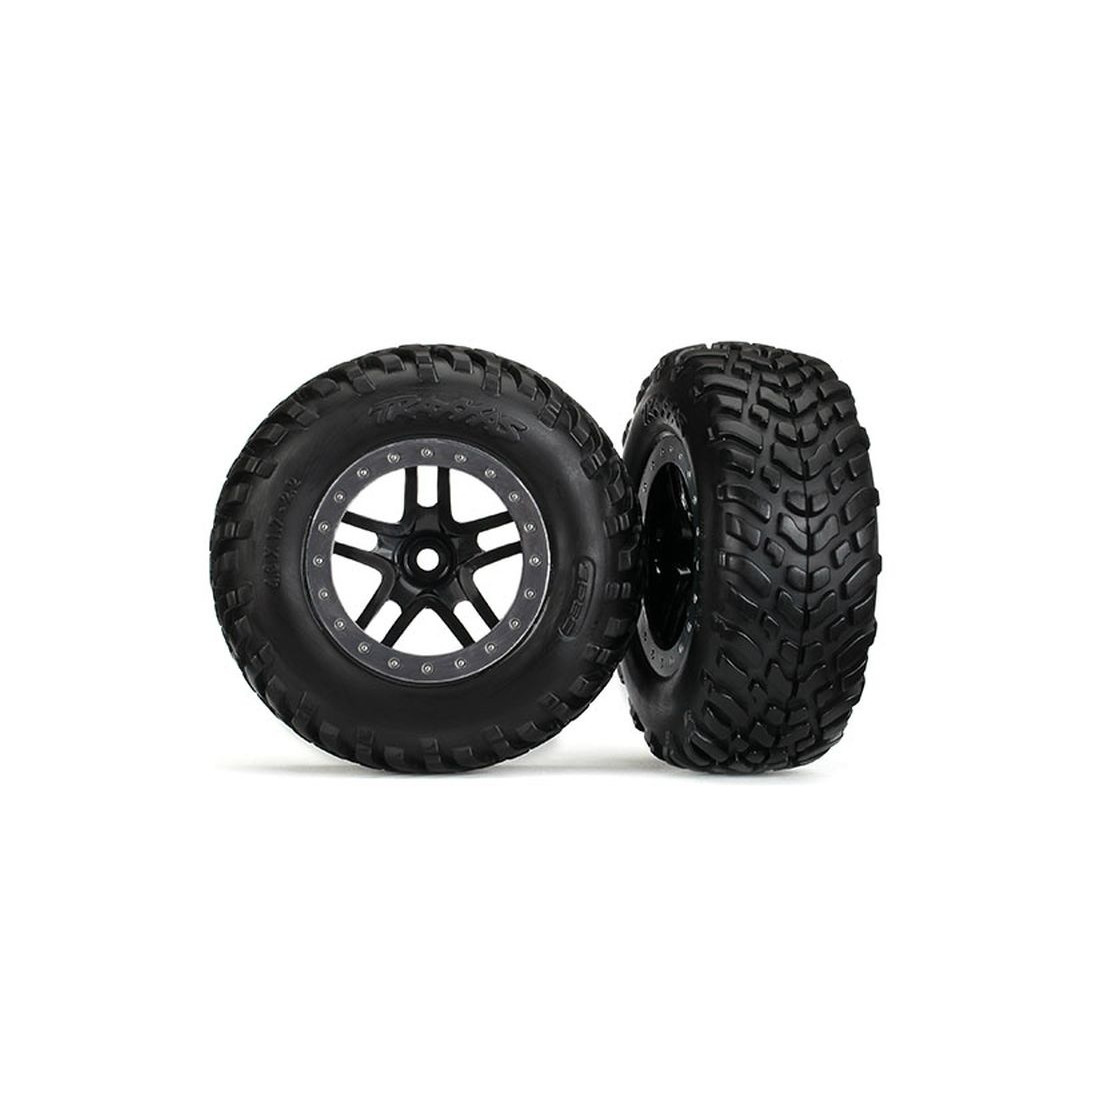 SCT Reifen auf 2.2/3.0 Felge schwarz/satin-chrom vorne (2)